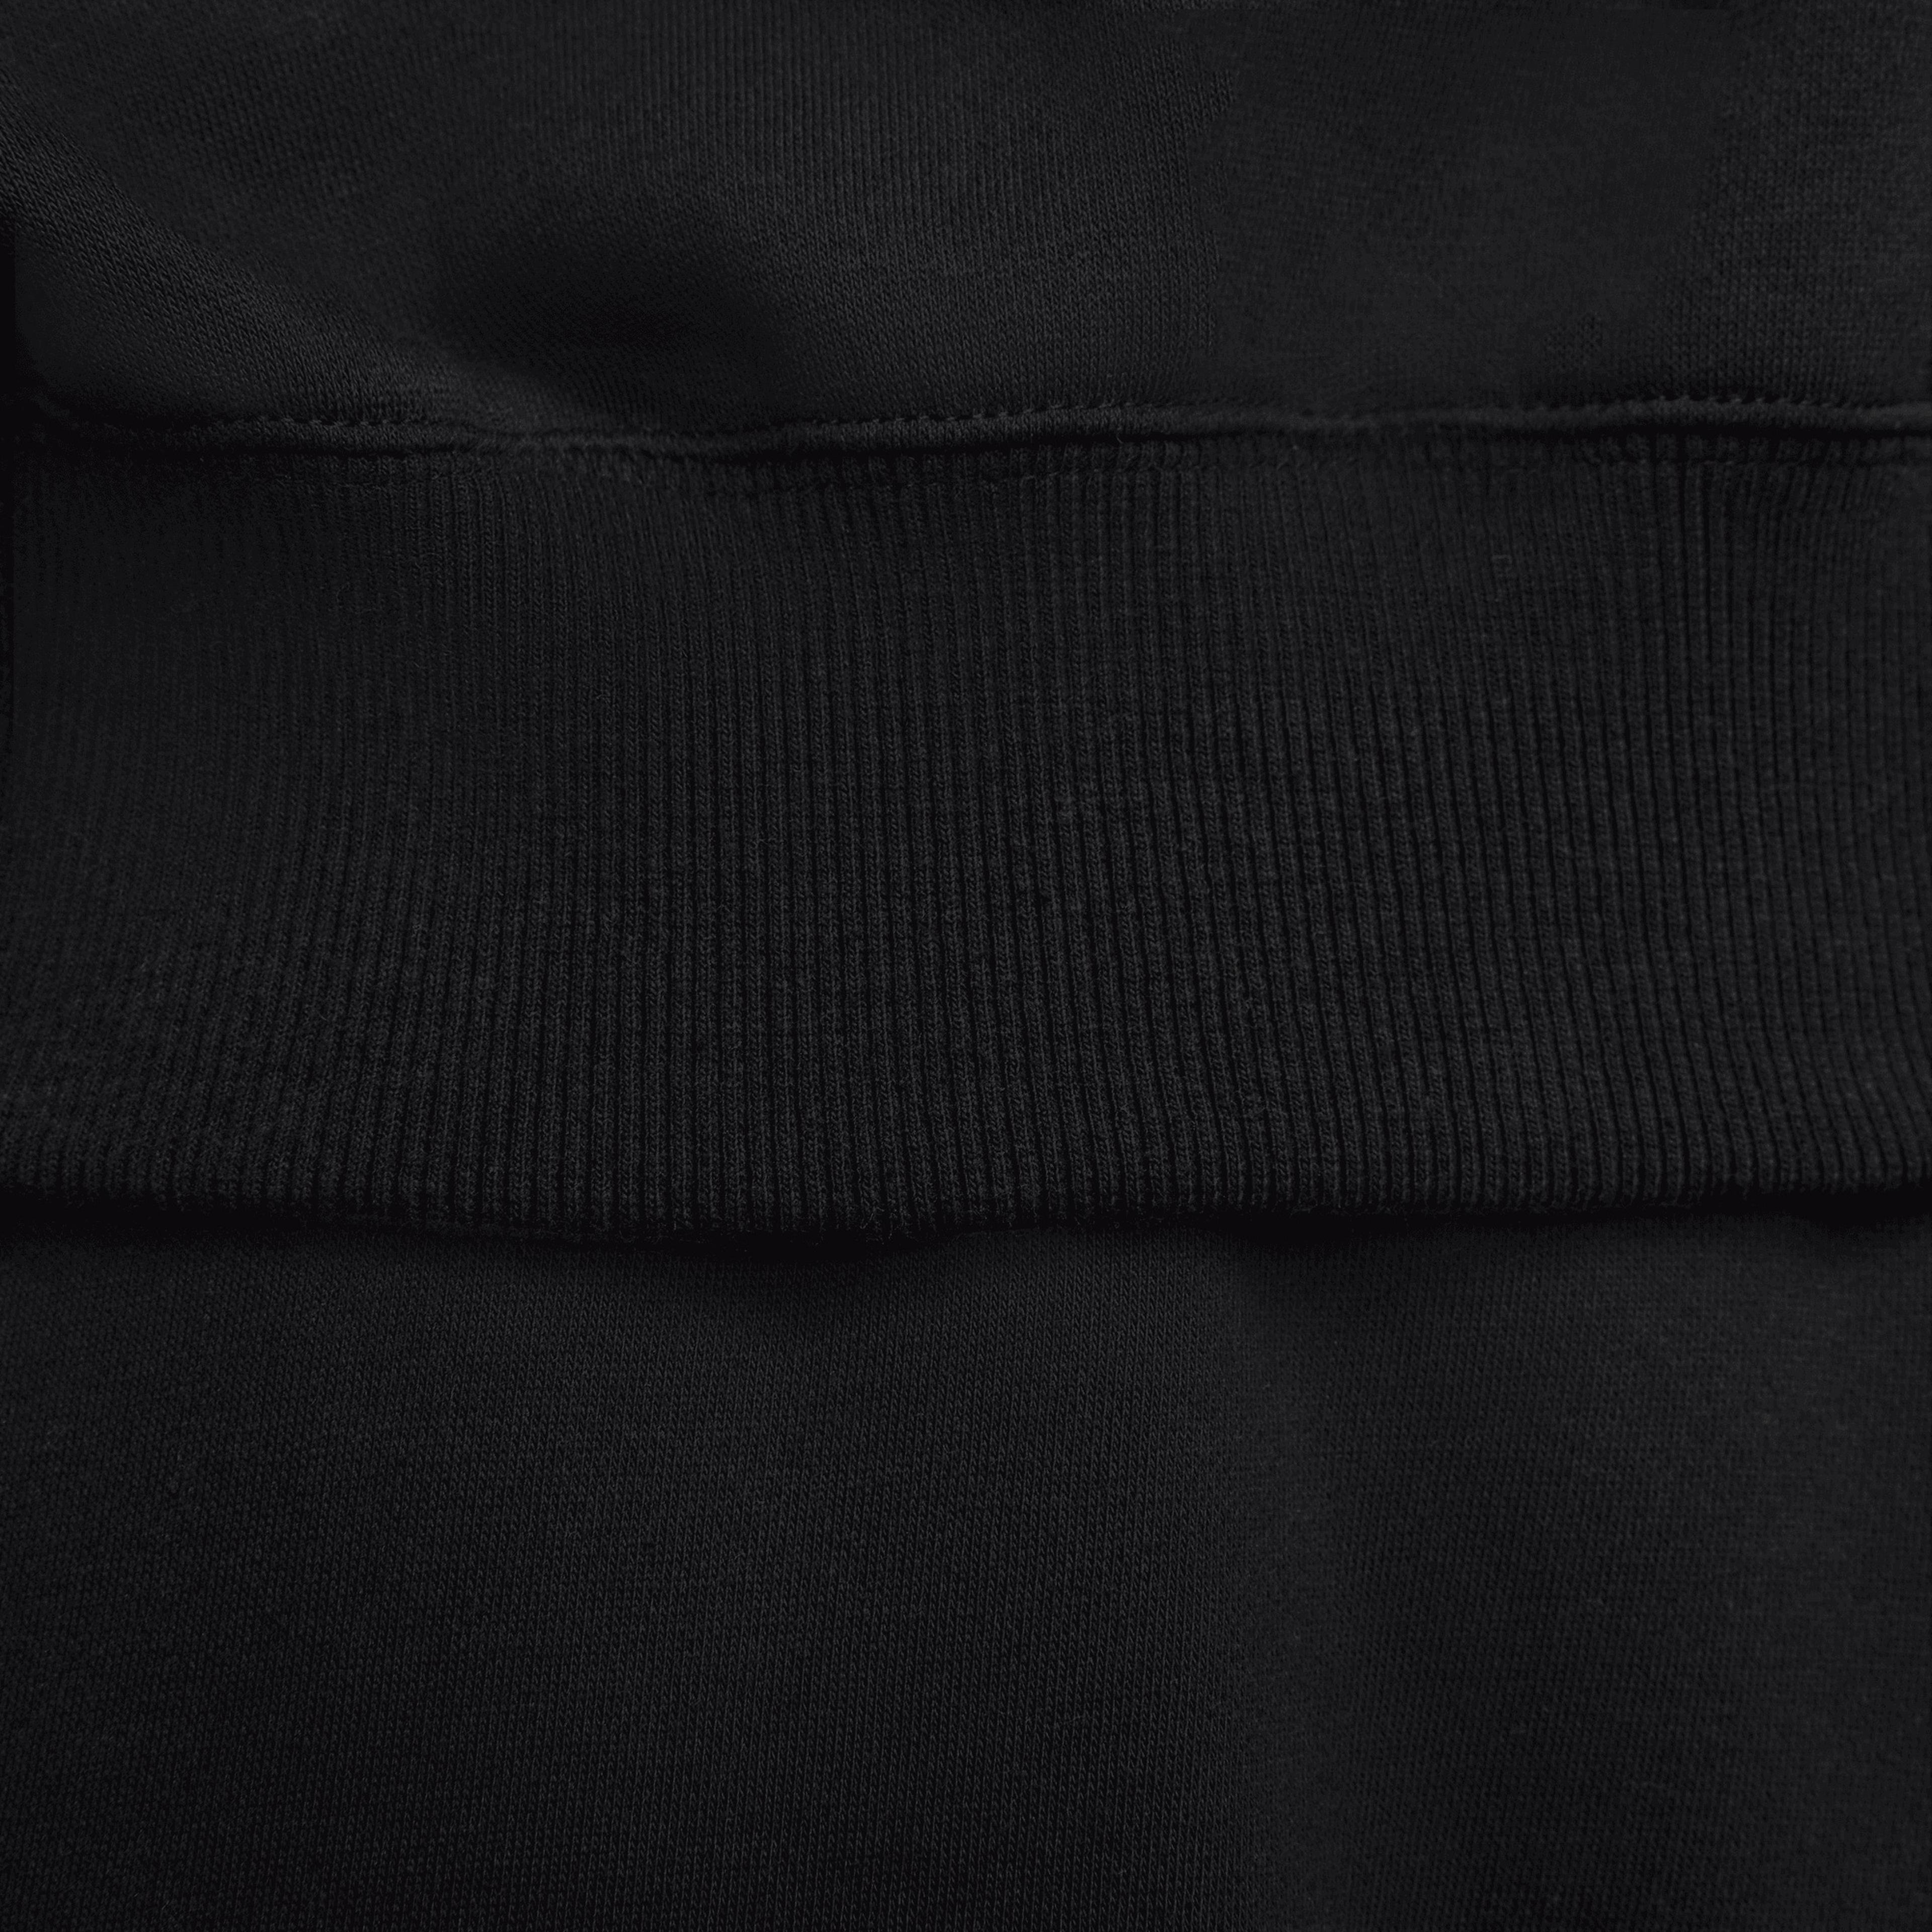 Nike Sportswear Phoenix Fleece 3/4  Kadın Siyah Sweatshirt